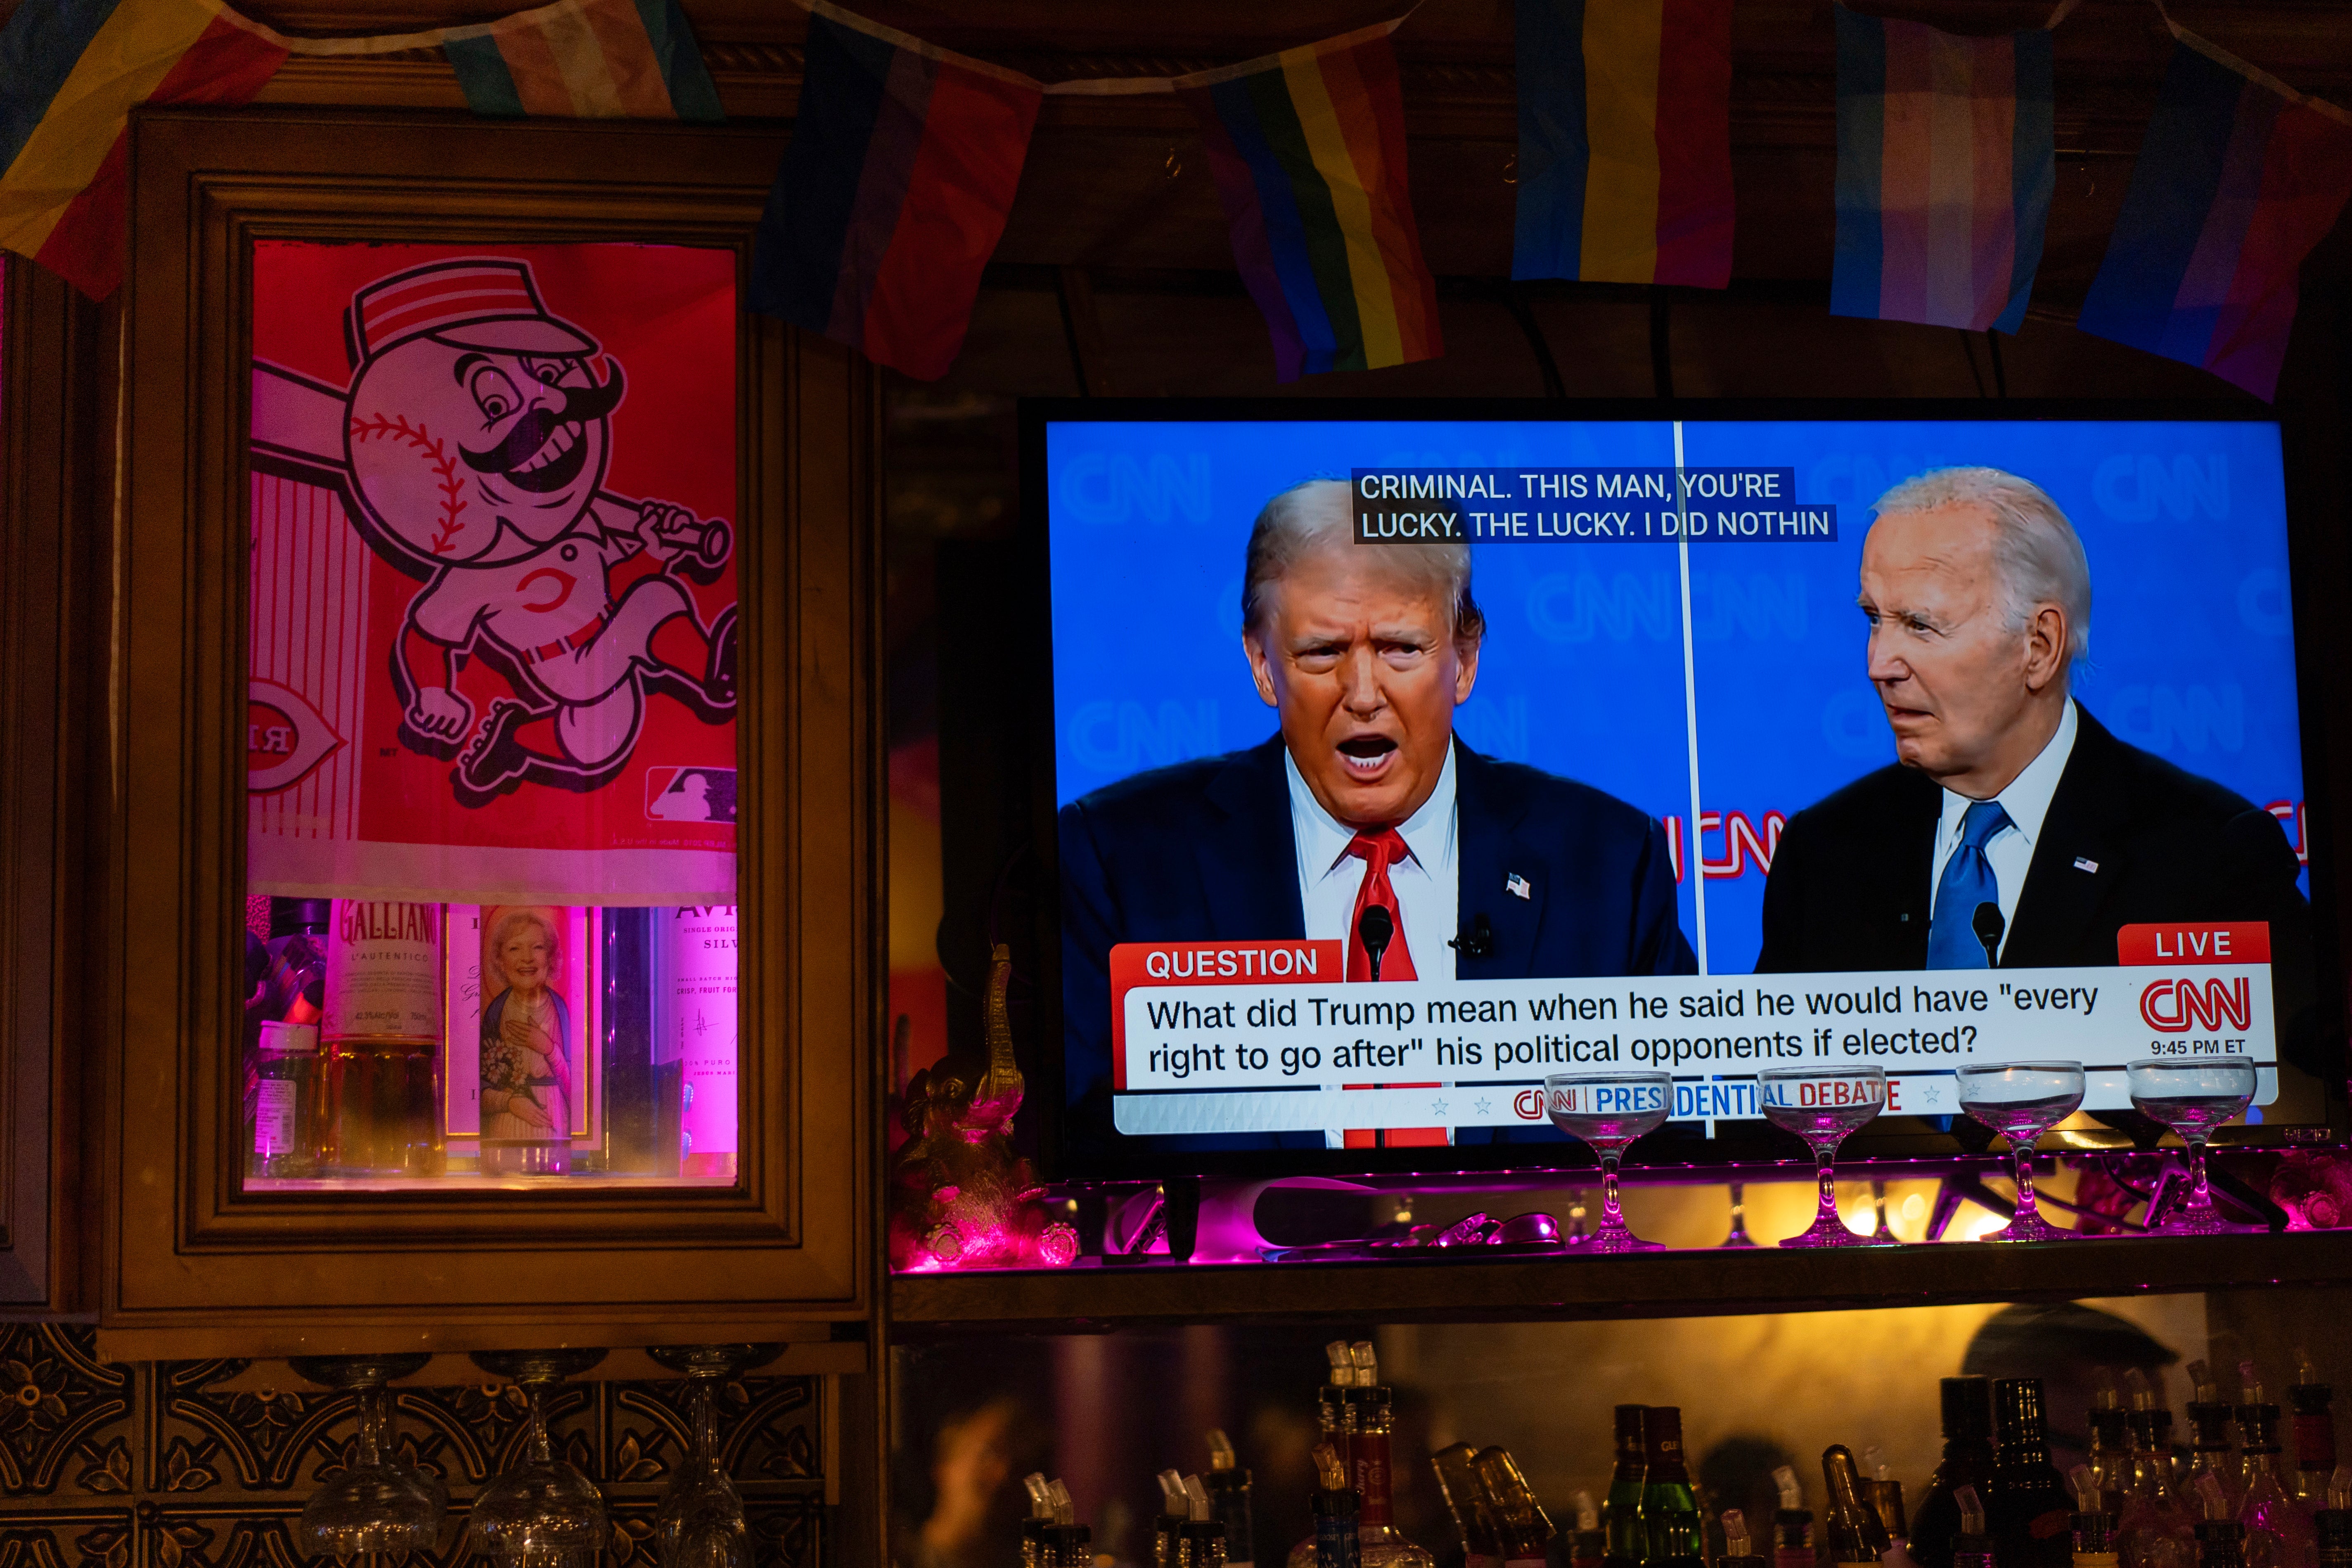 Trump and Biden on television during their presidential nominee debate last week